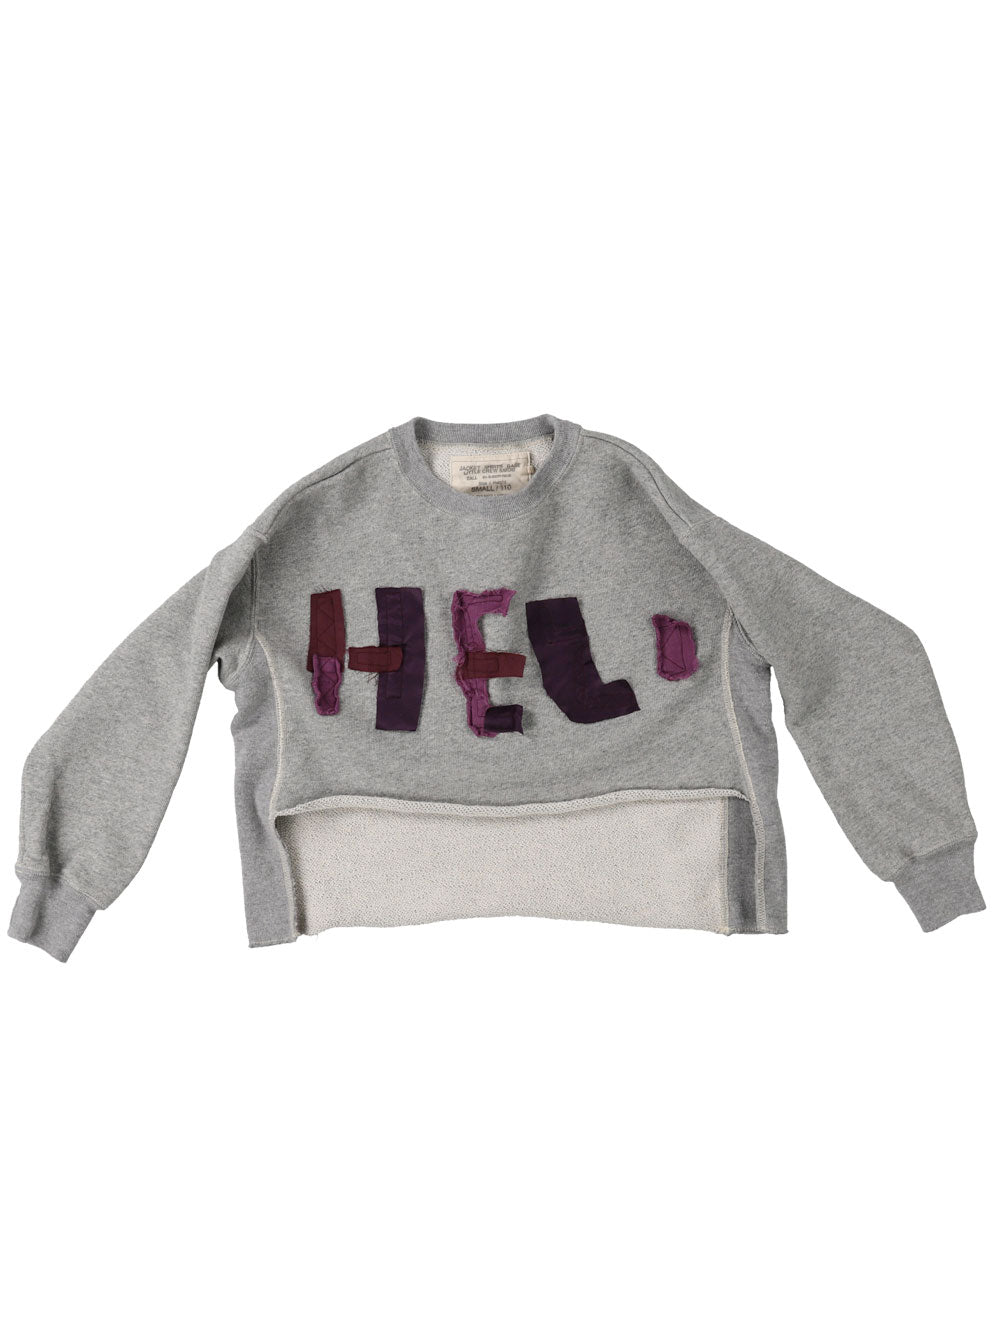 PREORDER: Grey HELLO Sweatshirt